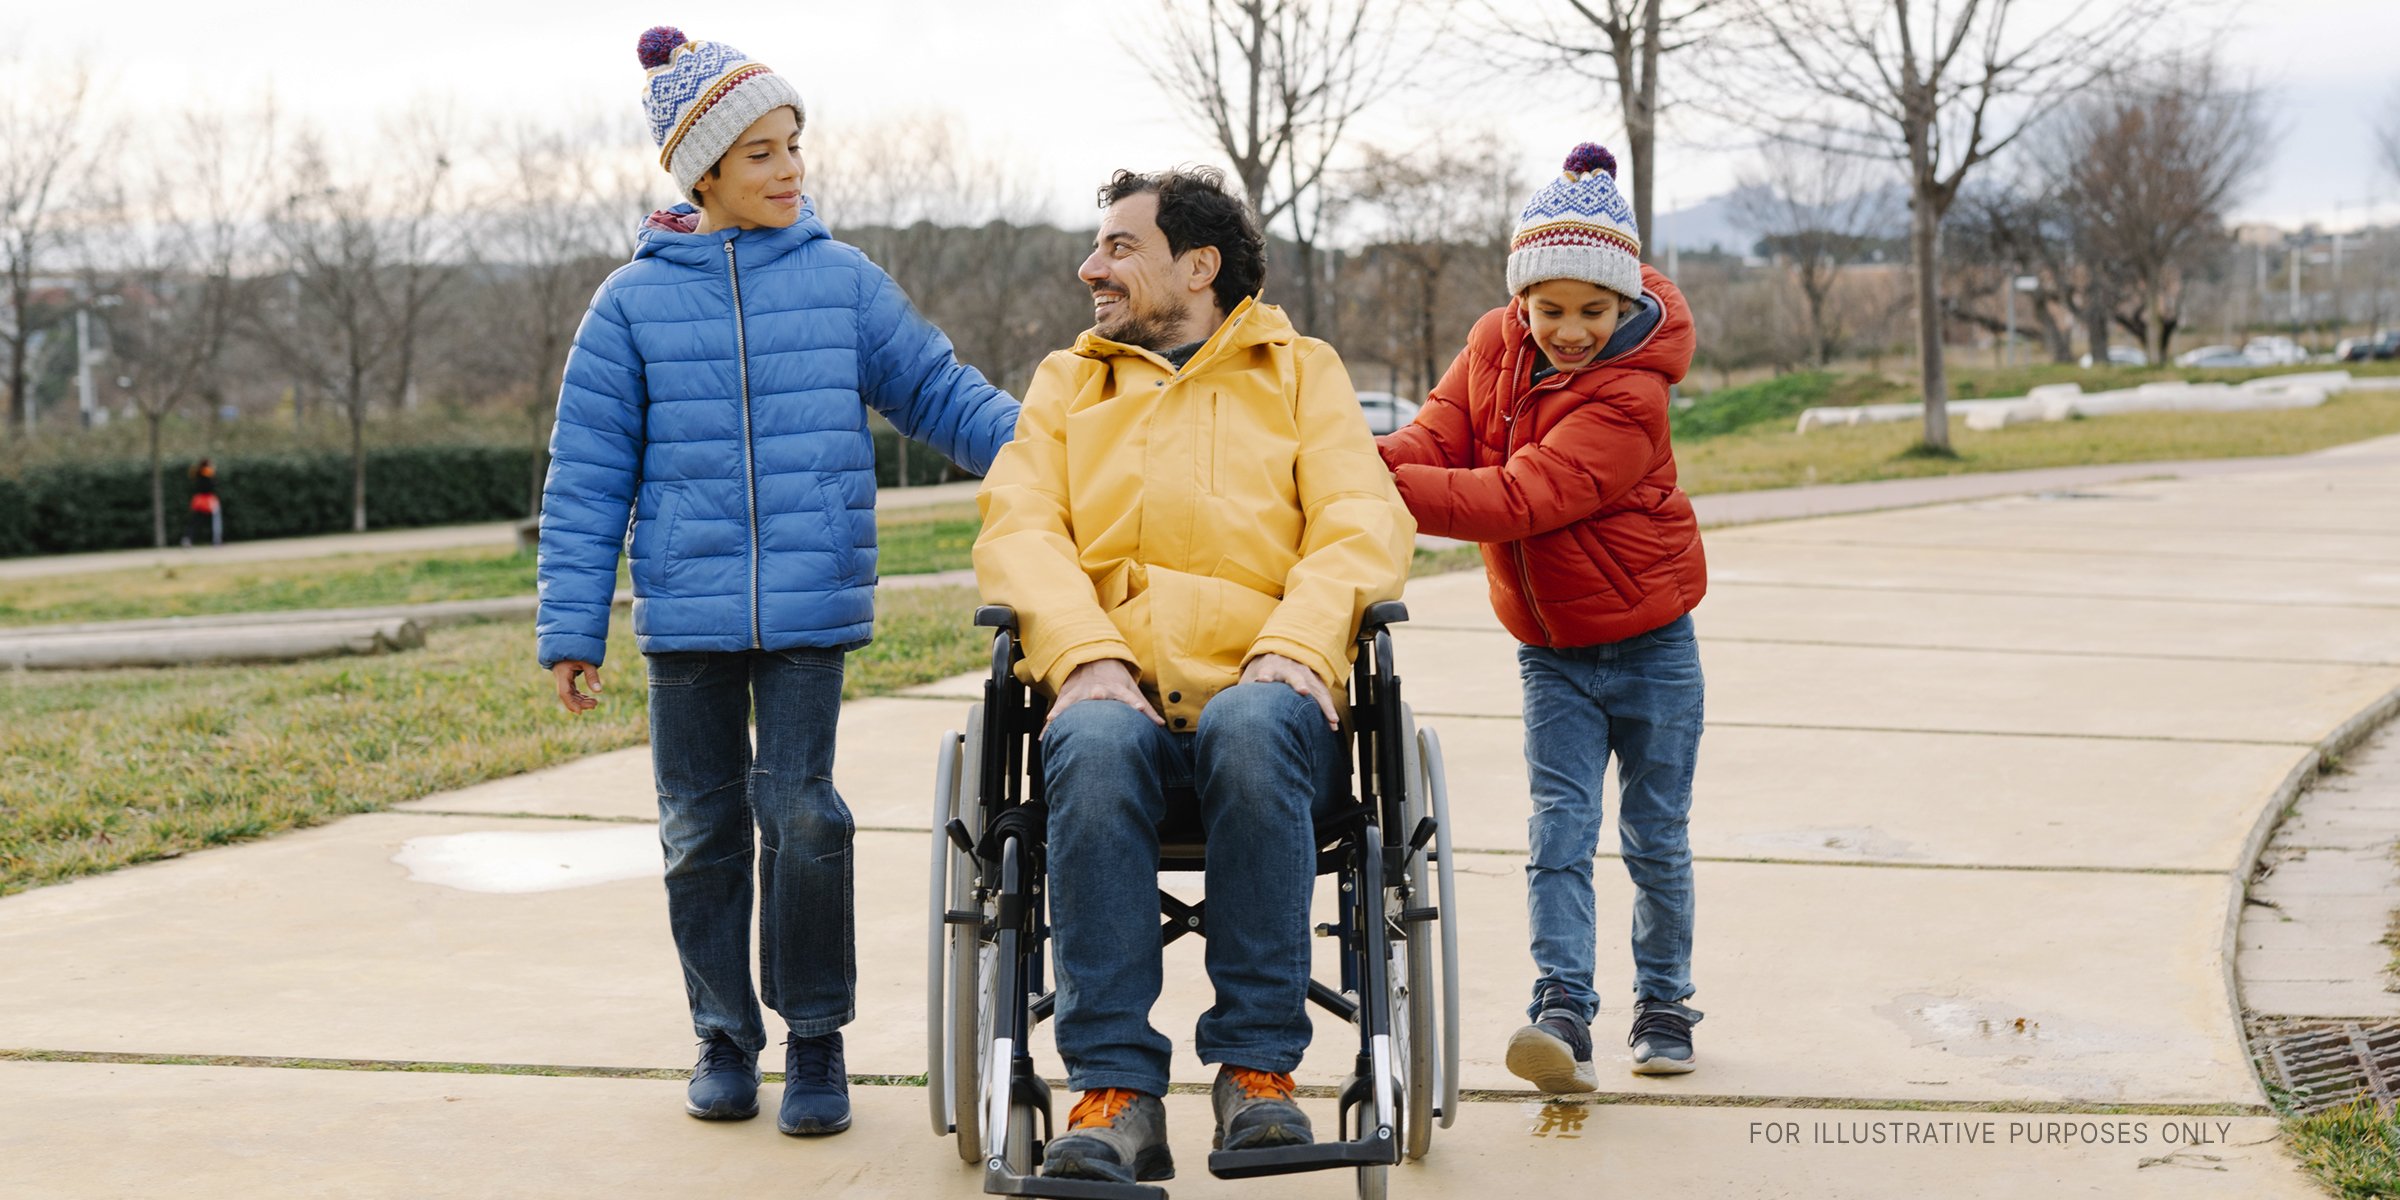 Zwei Kinder unterhalten sich mit einem Mann im Rollstuhl. | Quelle: Getty Images